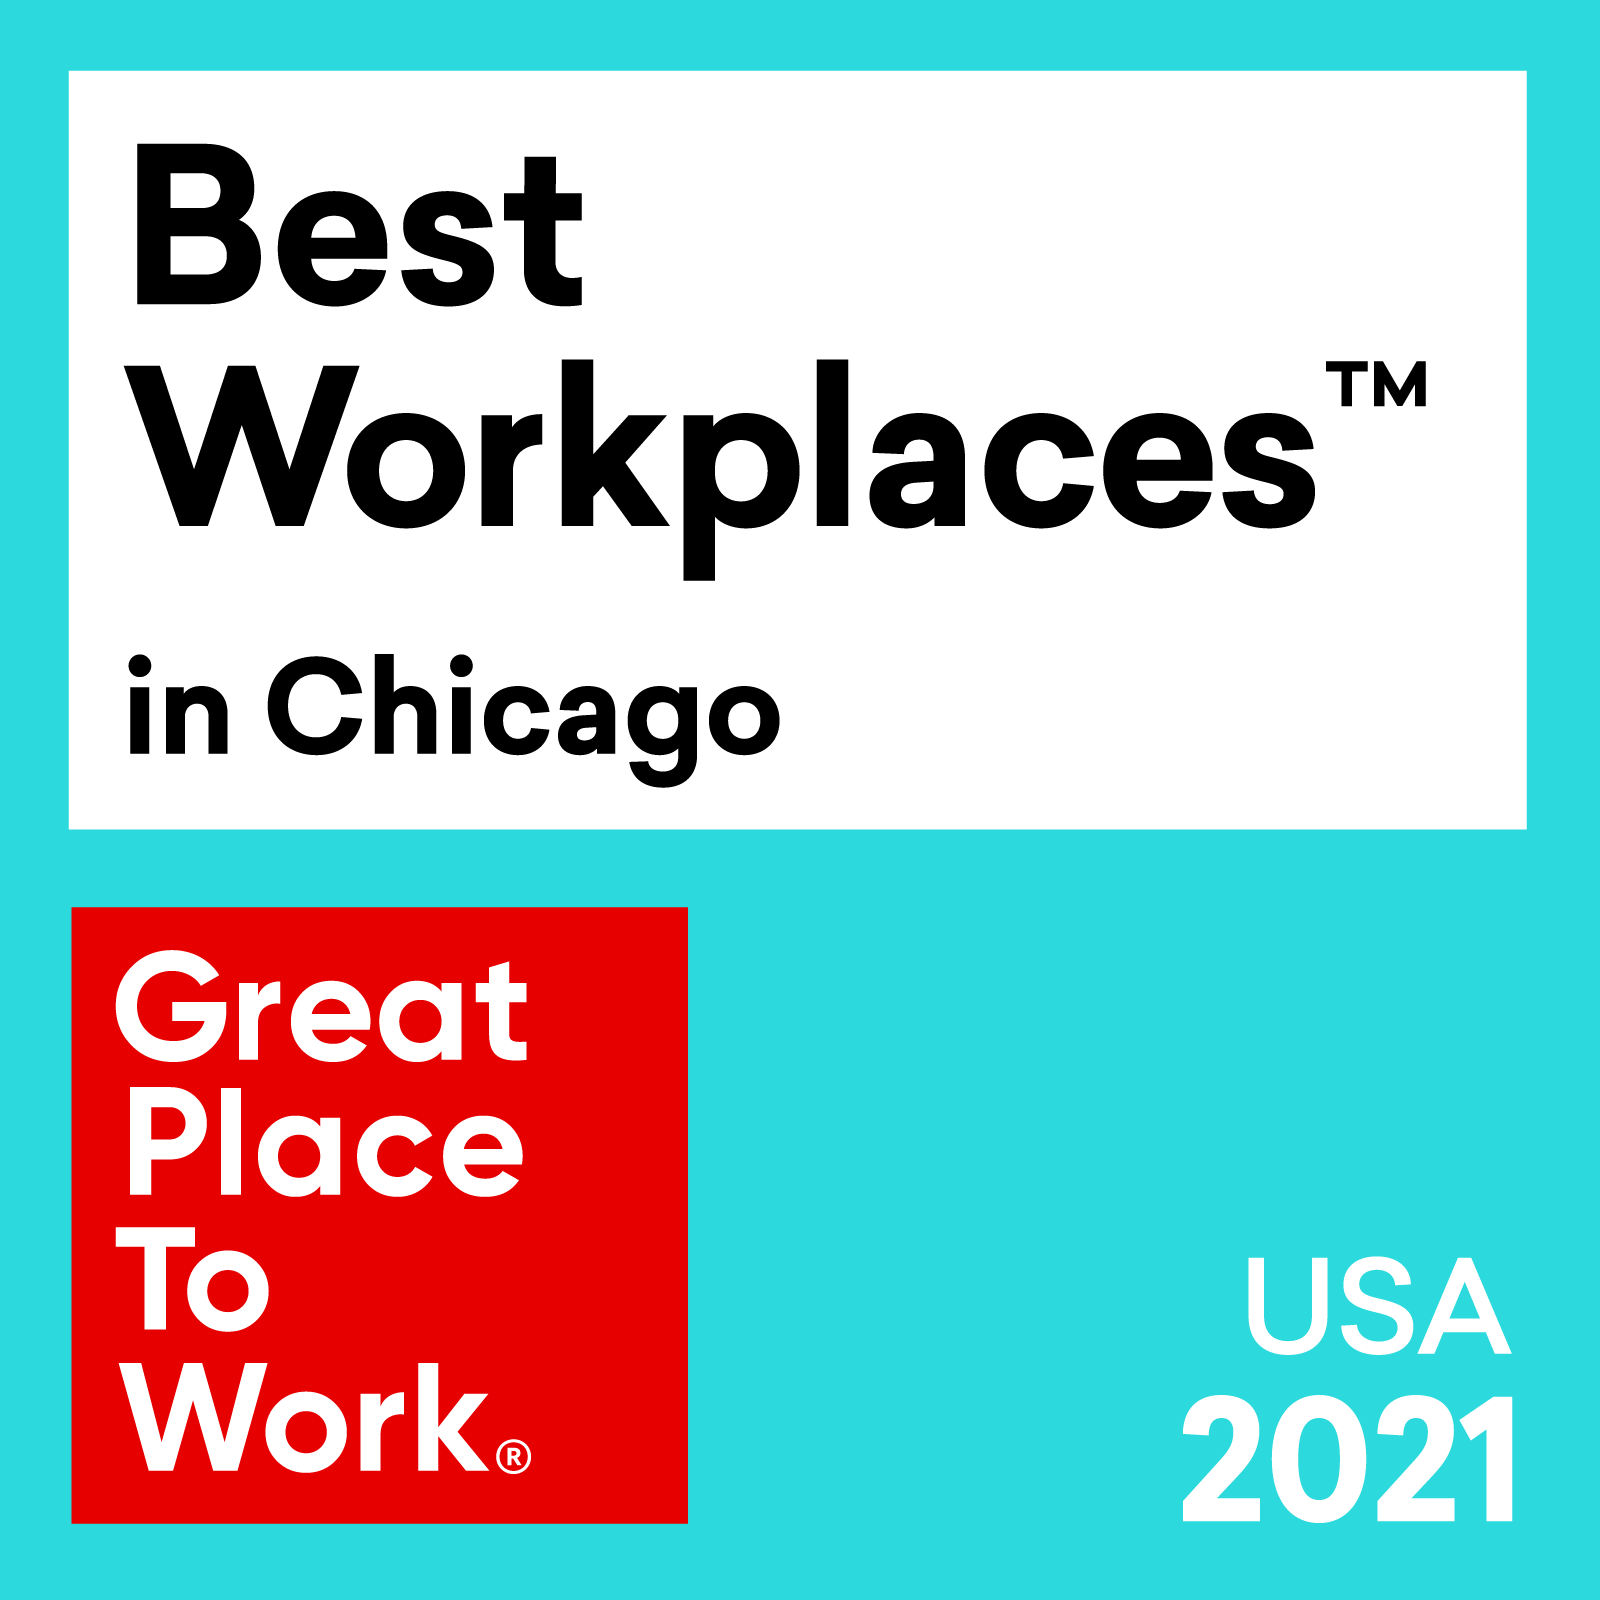 Miglior posto di lavoro™️ a Chicago - Premio 2021 per gli Stati Uniti da Great Place To Work